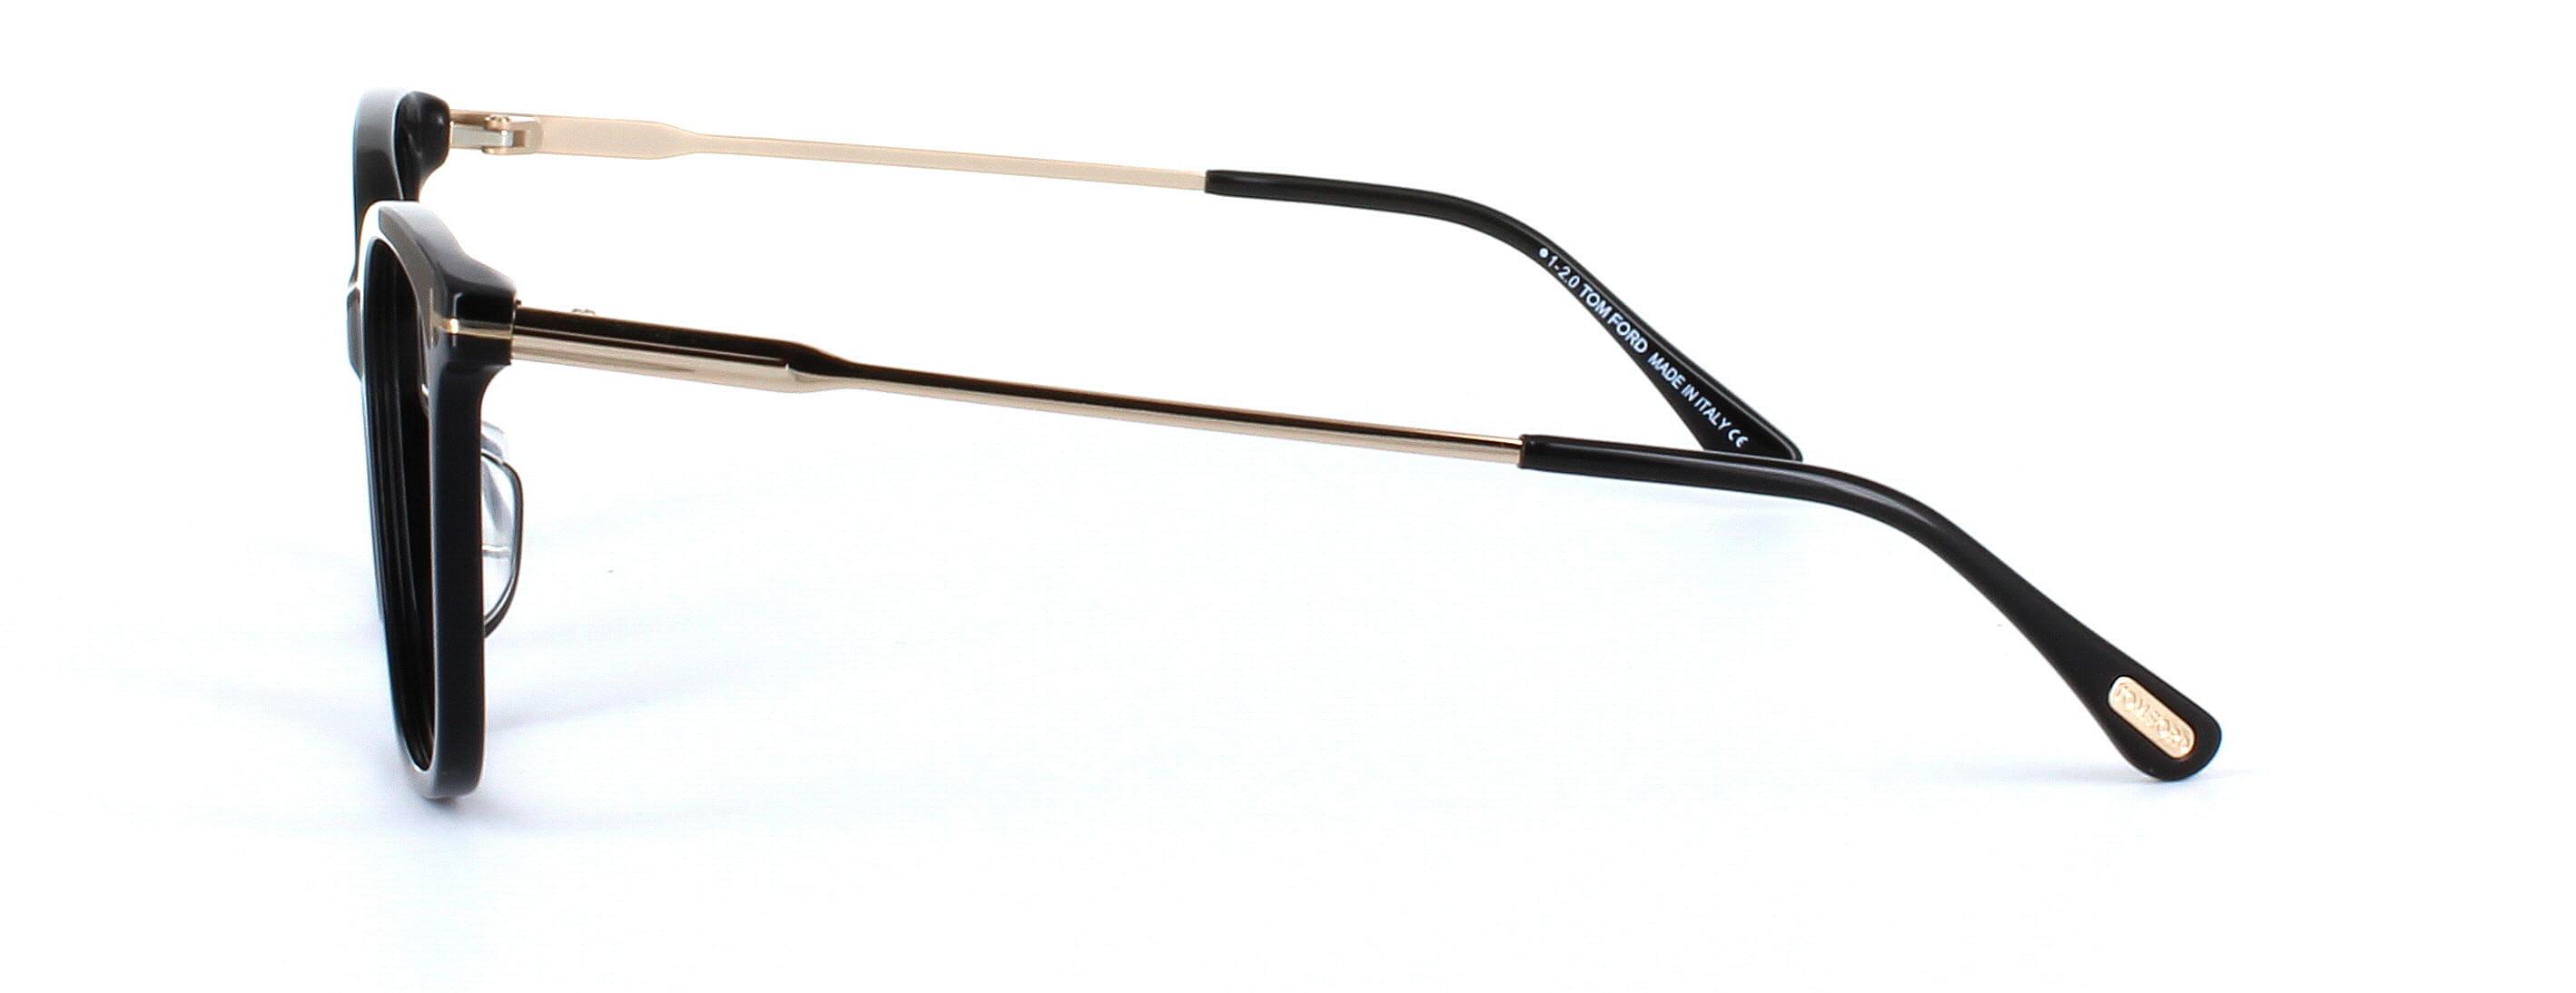 Tom Ford 5510 - Women's black acetate glasses - image 2